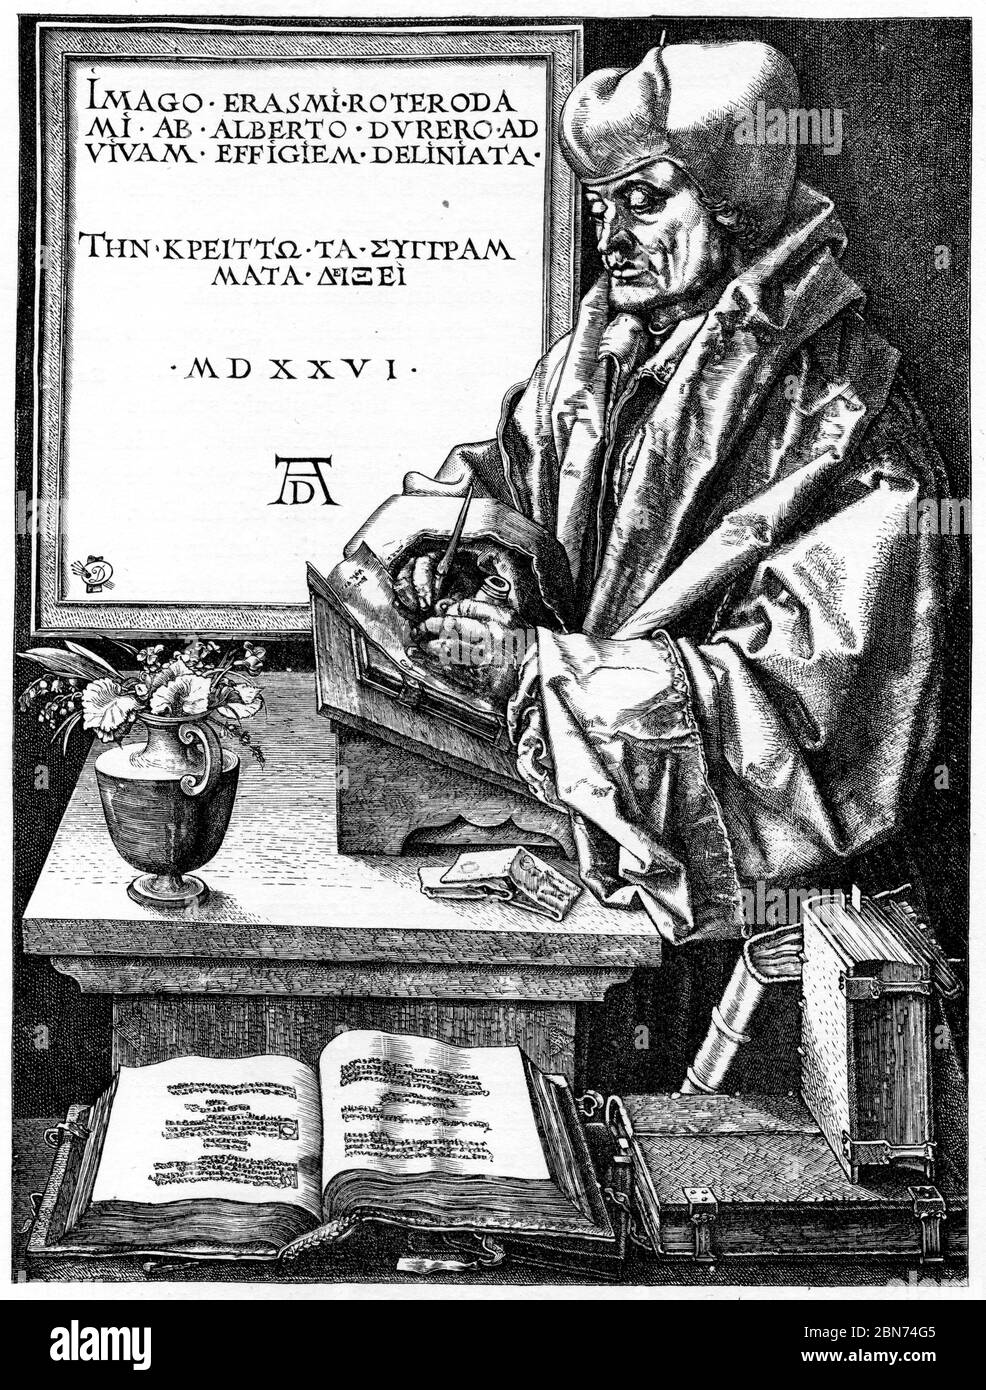 Porträt von Erasmus, 1526. Von Albrecht Dürer (1471-1528). Desiderius Erasmus Roterodamus (1466-1536), bekannt als Erasmus oder Erasmus von Rotterdam, war ein niederländischer Philosoph und christlicher Gelehrter, der als einer der größten Gelehrten der nördlichen Renaissance gilt. Stockfoto